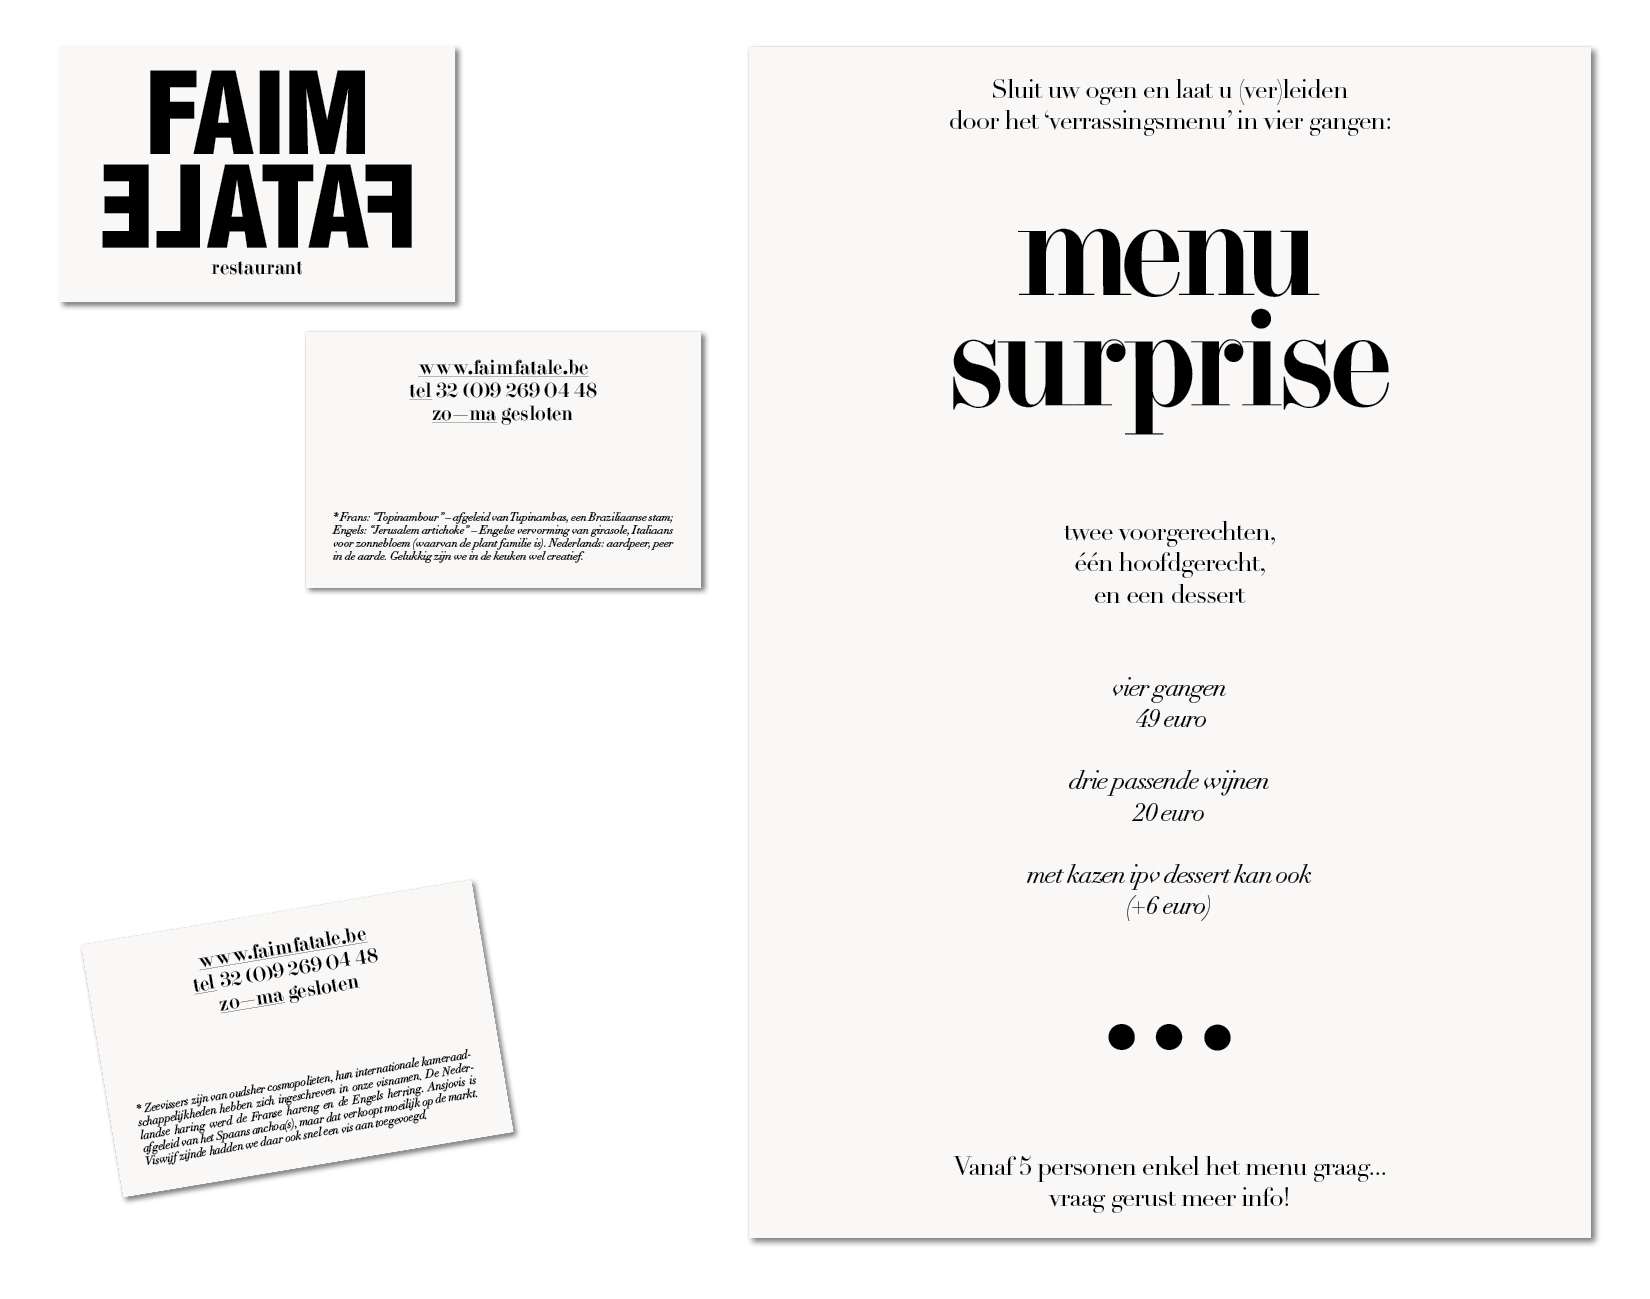 Faim Fatale menu and businesscard design Lauren Grusenmeyer